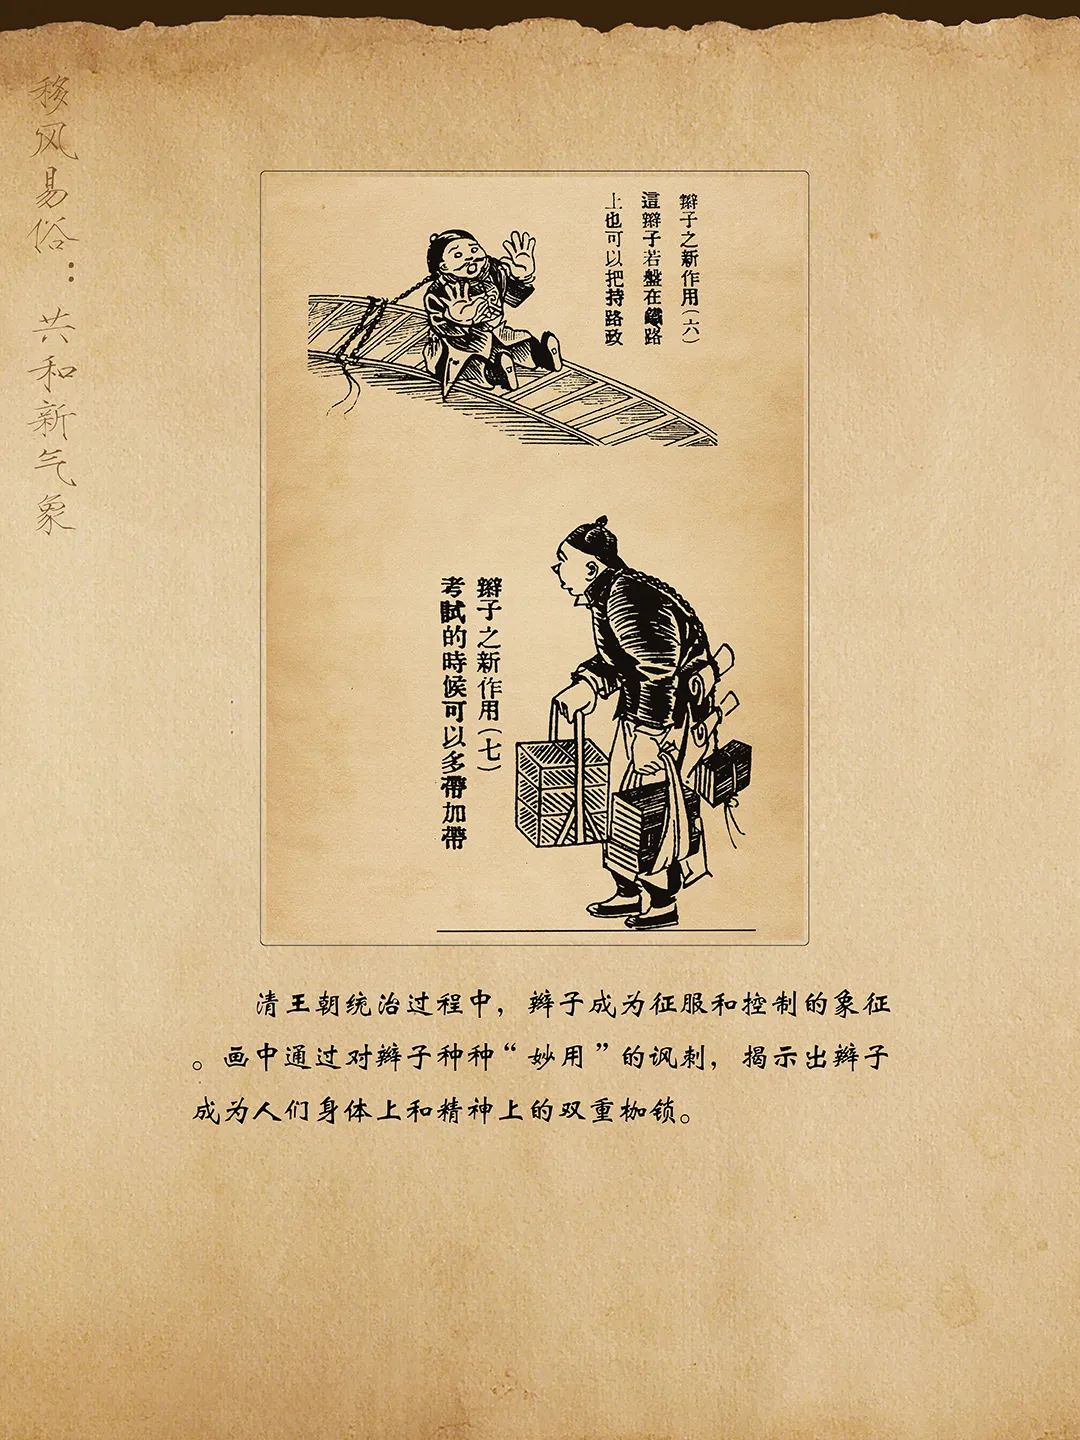 线上展览:历史的放大镜——辛亥革命时期漫画展(十三)